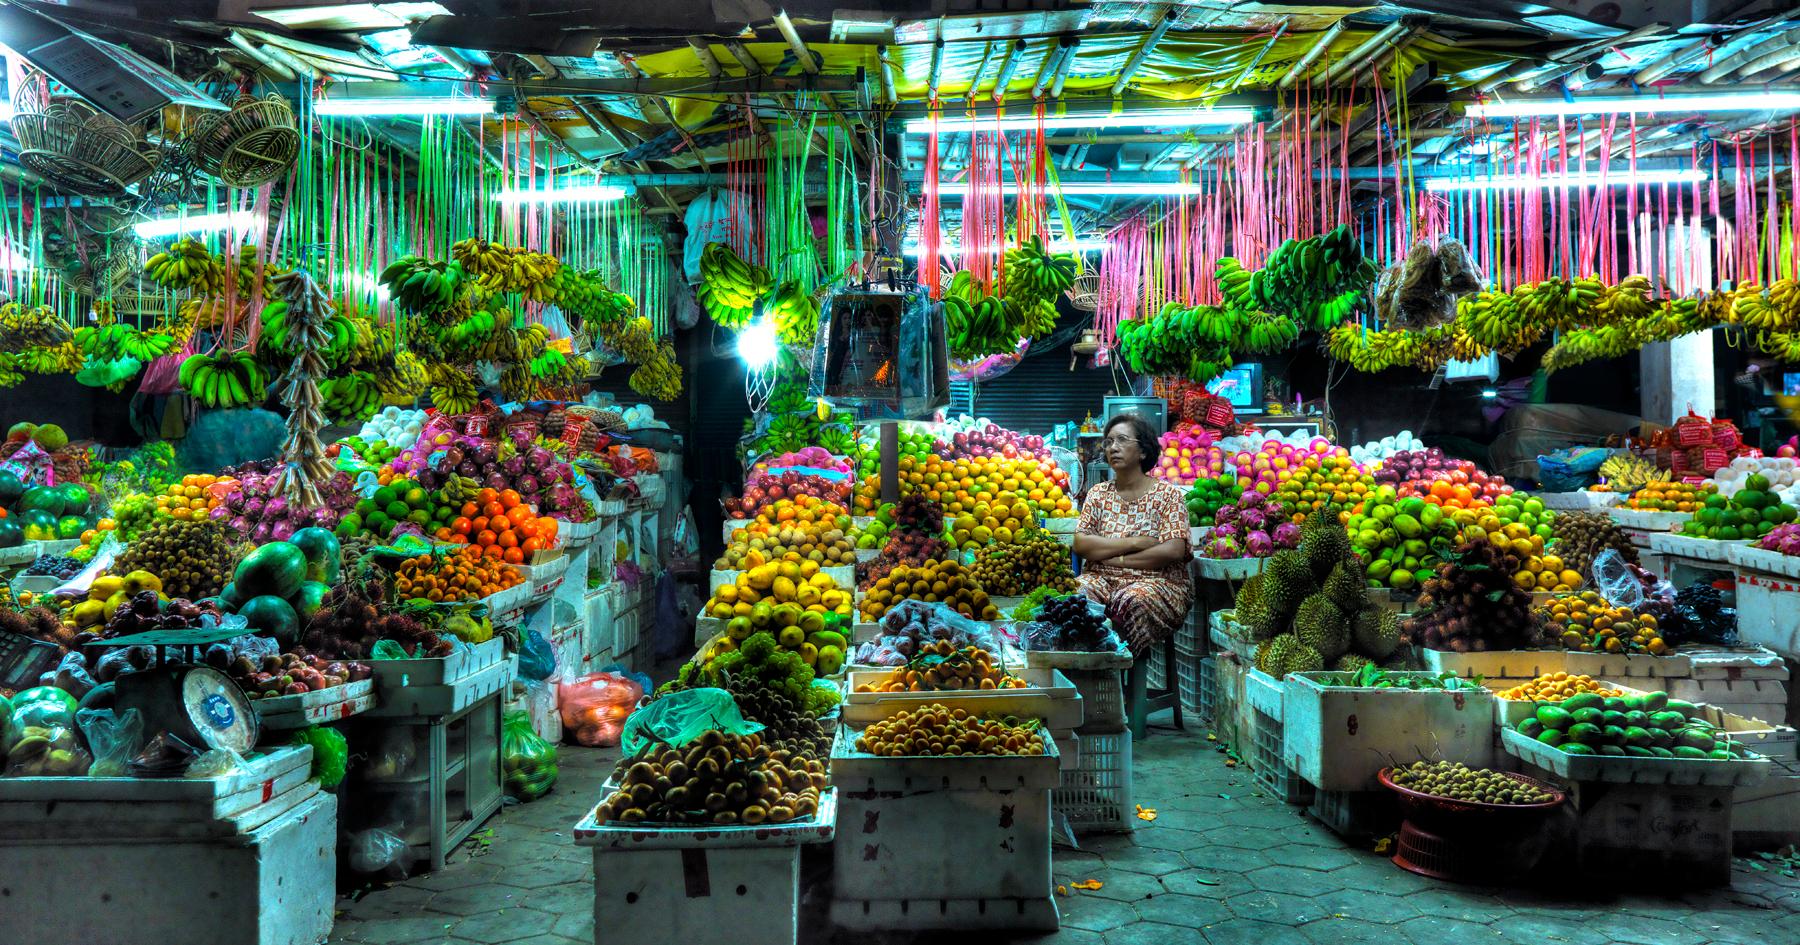 Christian Voigt Color Photograph - Fruit Market